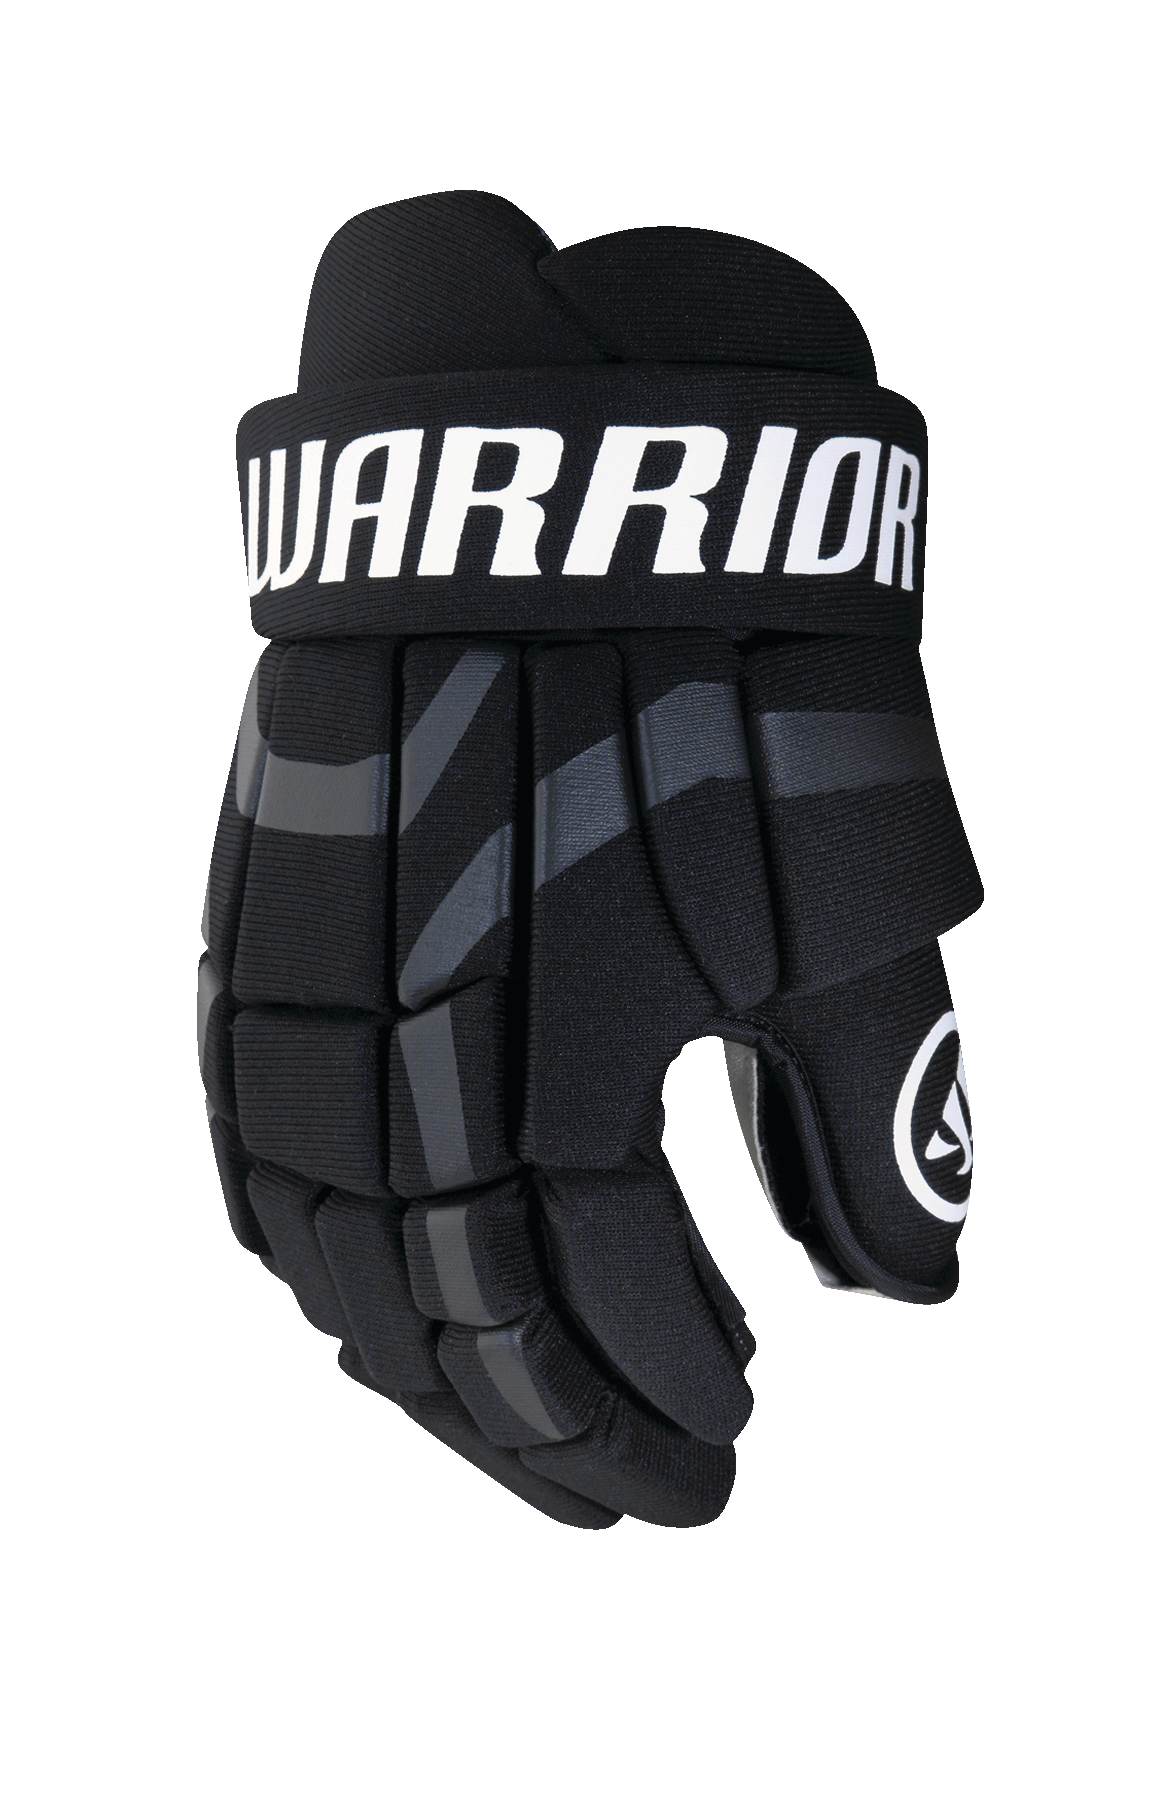 warrior covert dt4 gloves